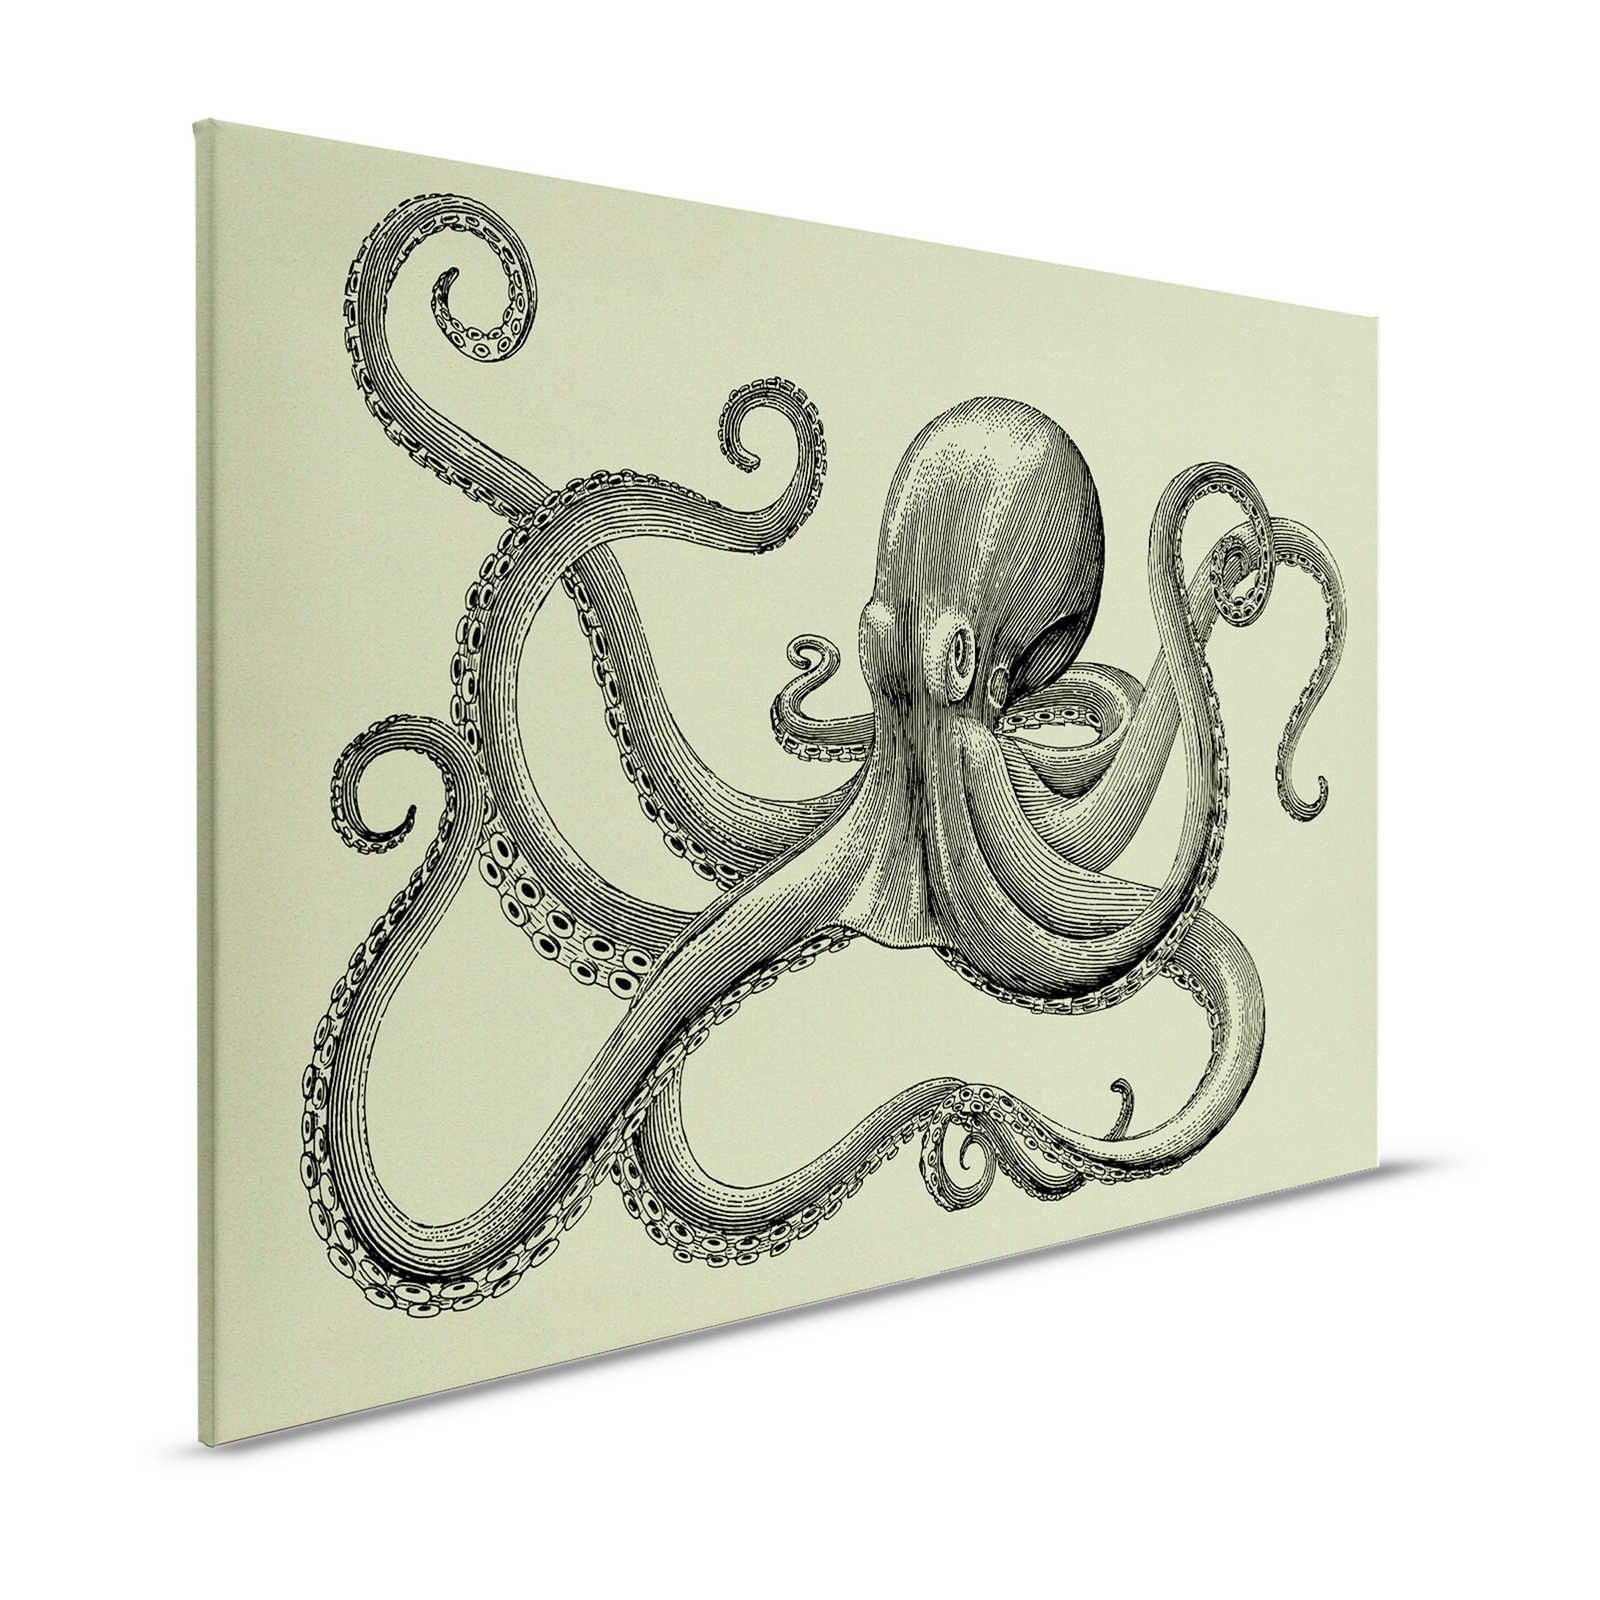 Jules 3 - Canvas schilderij Octopus in schetsstijl & vintage look - 1.20 m x 0.80 m
